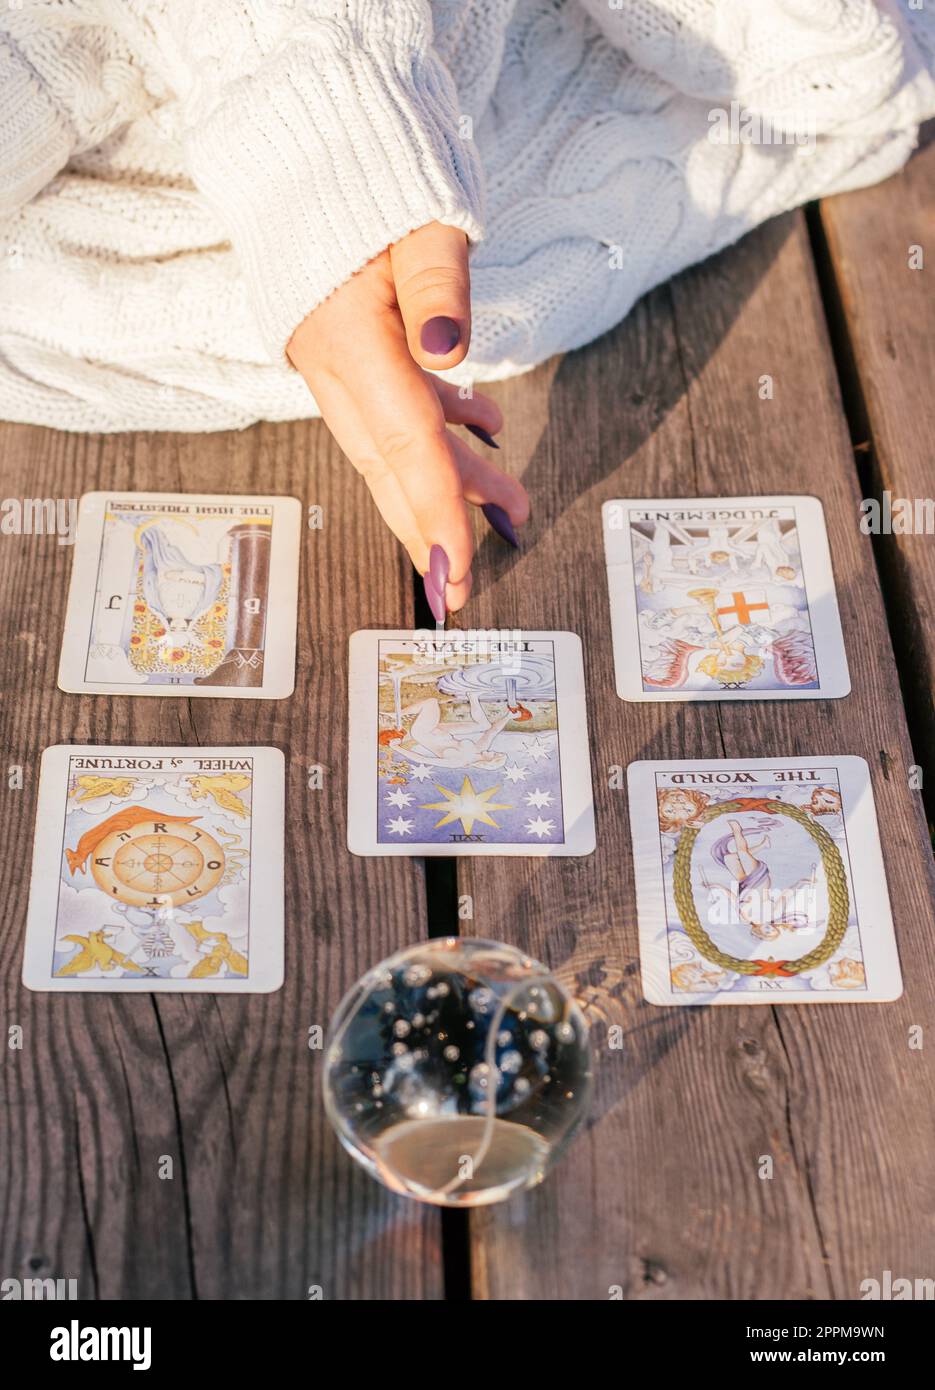 Die Hand einer Frau mit lila Nägeln zeigt auf fünf Tarot-Karten, die auf einer Holzfläche neben einer Kristallkugel verteilt sind. Vertikal Stockfoto